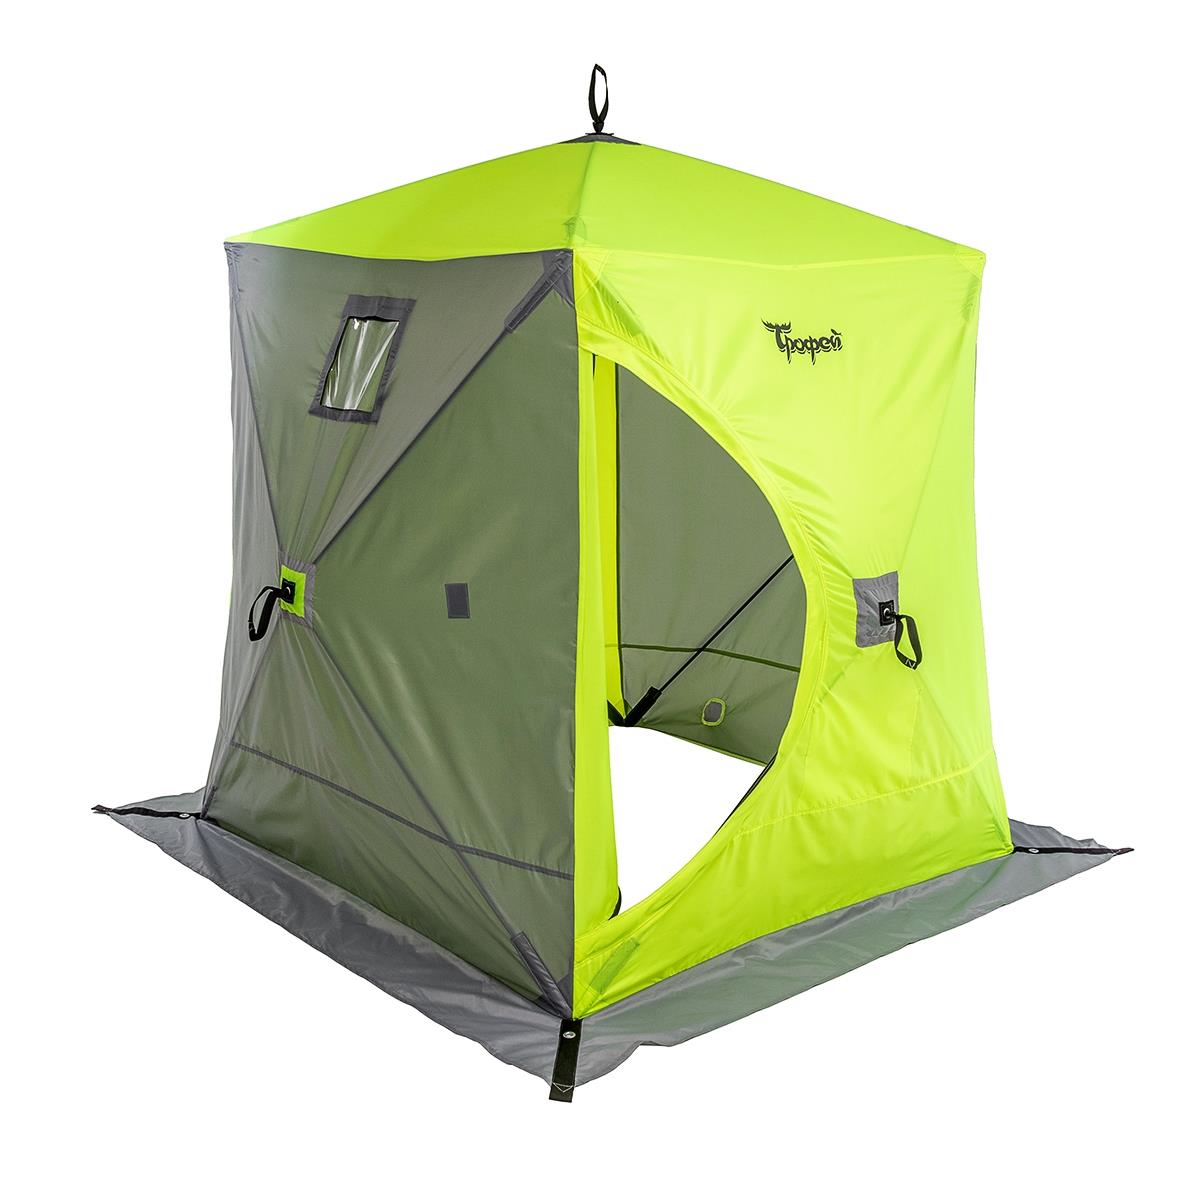 Палатка зимняя Куб 1,5х1,5 yellow lumi/gray ТРОФЕЙ палатка зонт 3 местная зимняя трофей